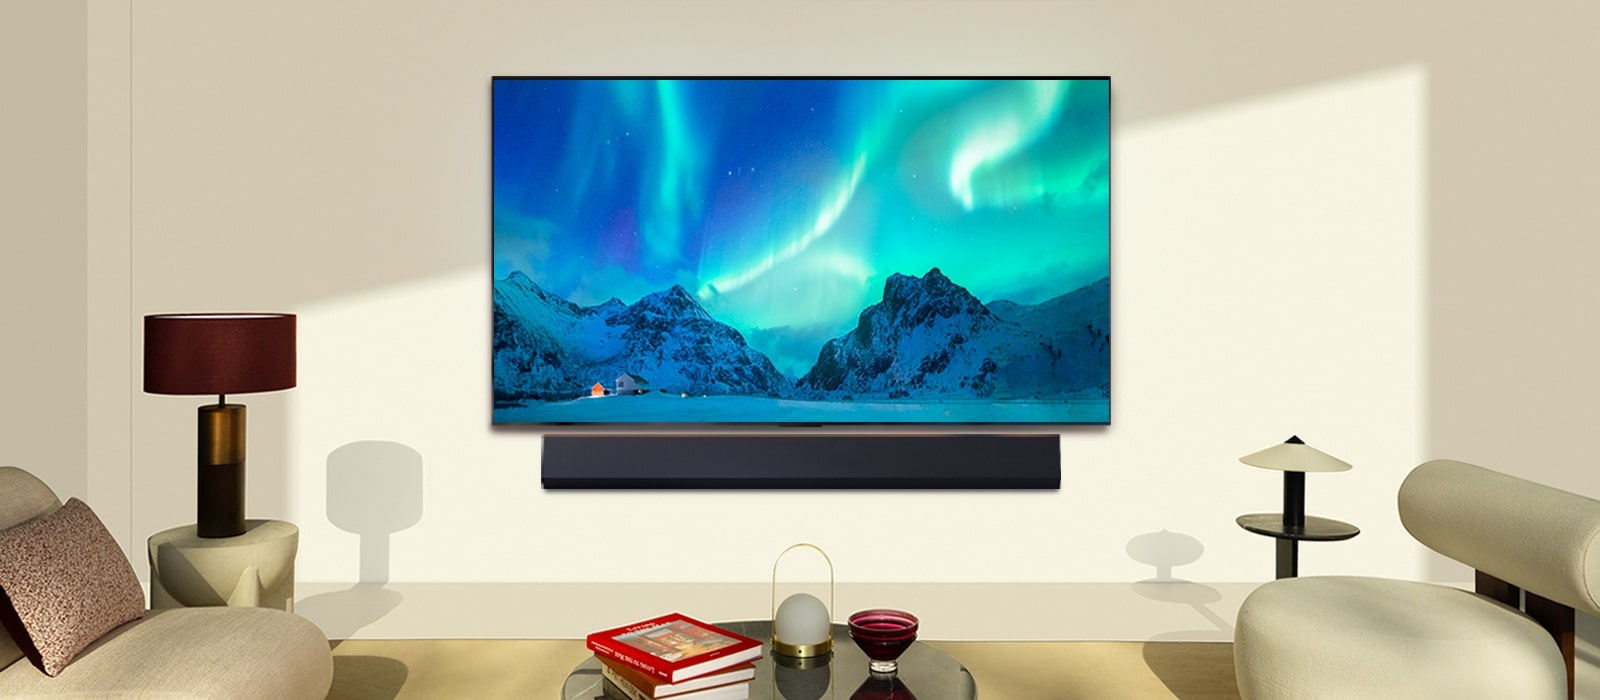 LG OLED TV i LG Soundbar u modernom stambenom prostoru danju. Slika polarne svjetlosti na zaslonu prikazuje se s idealnom razinom osvjetljenja.